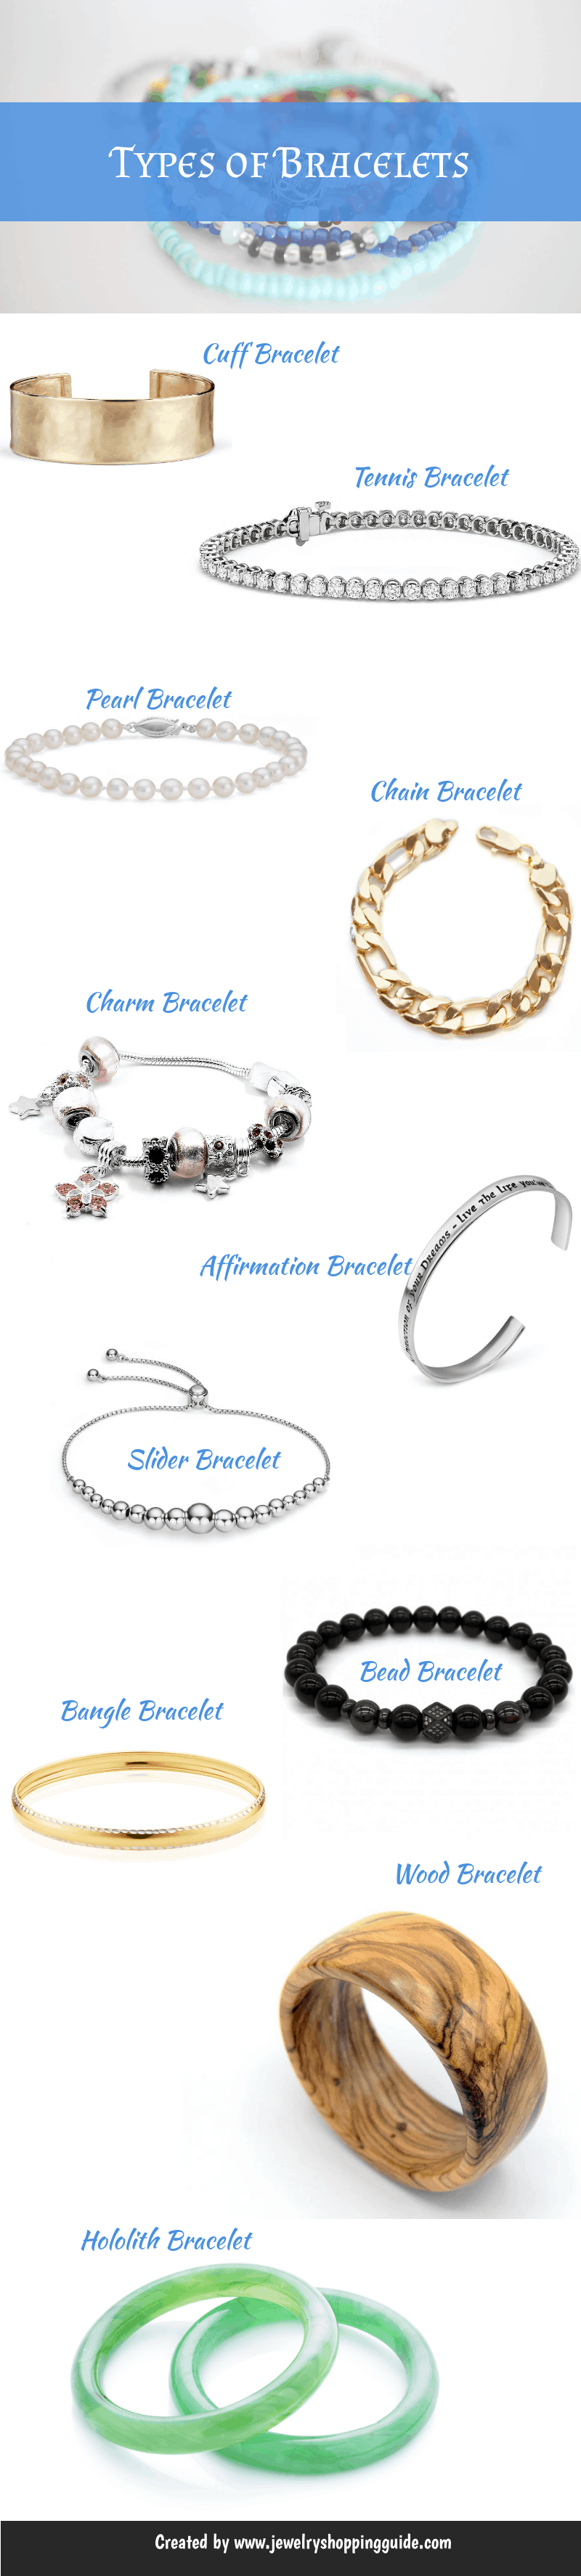 types of bracelets